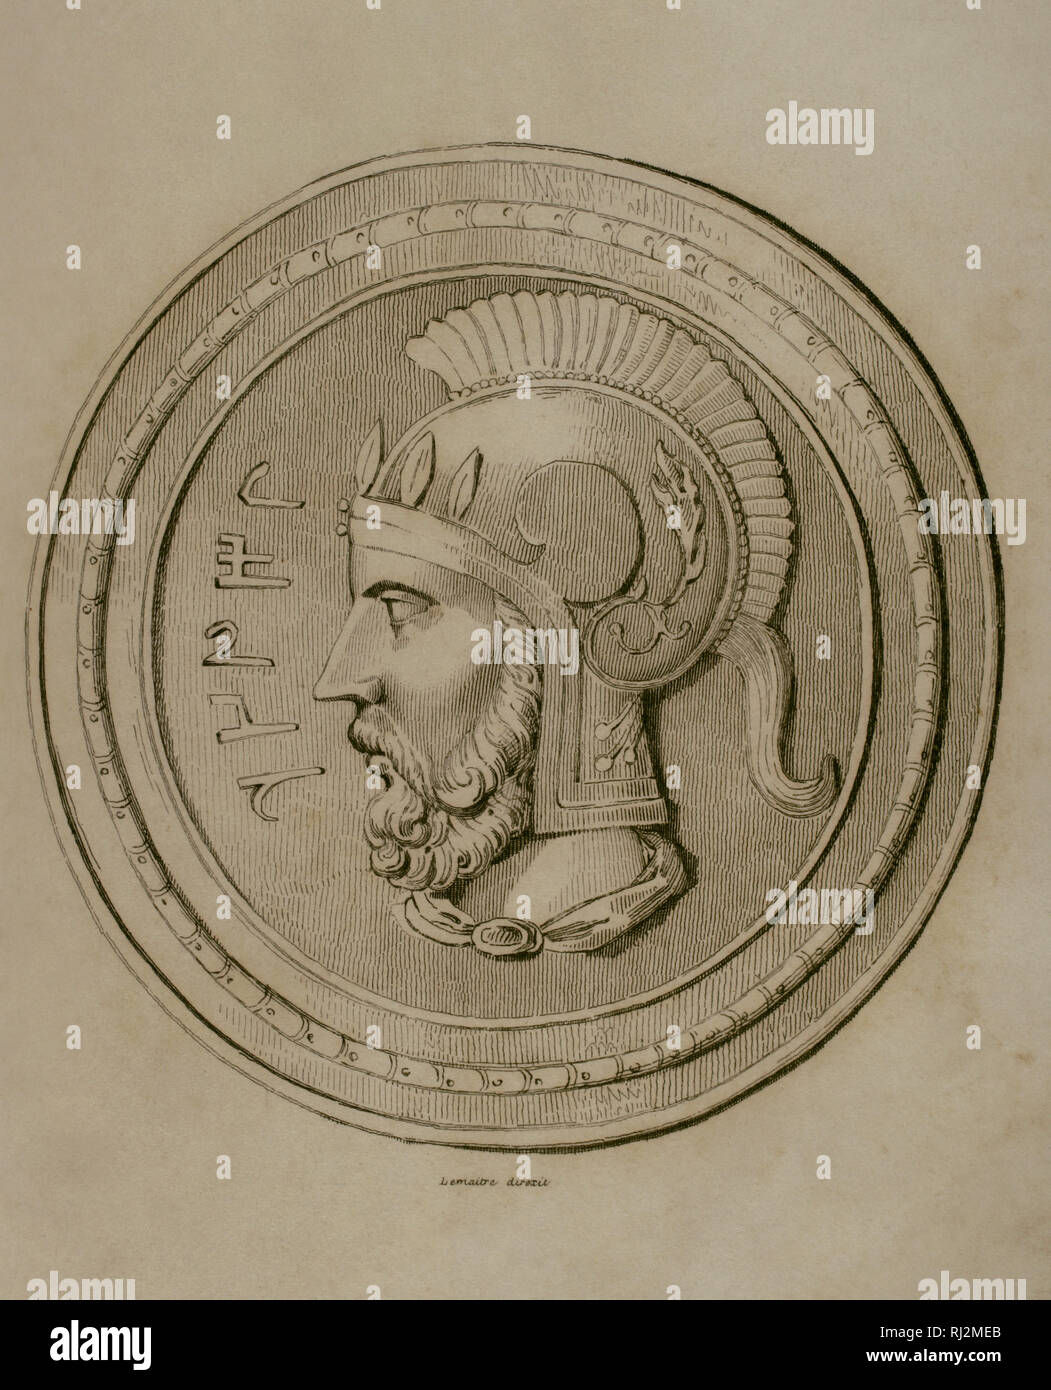 Hannibal Barca (247-183/181 v. Chr.). Karthagische Armee. Gravur. Lemaitre Direxit. Panorama Universal. Geschichte von Karthago, 1850. Stockfoto